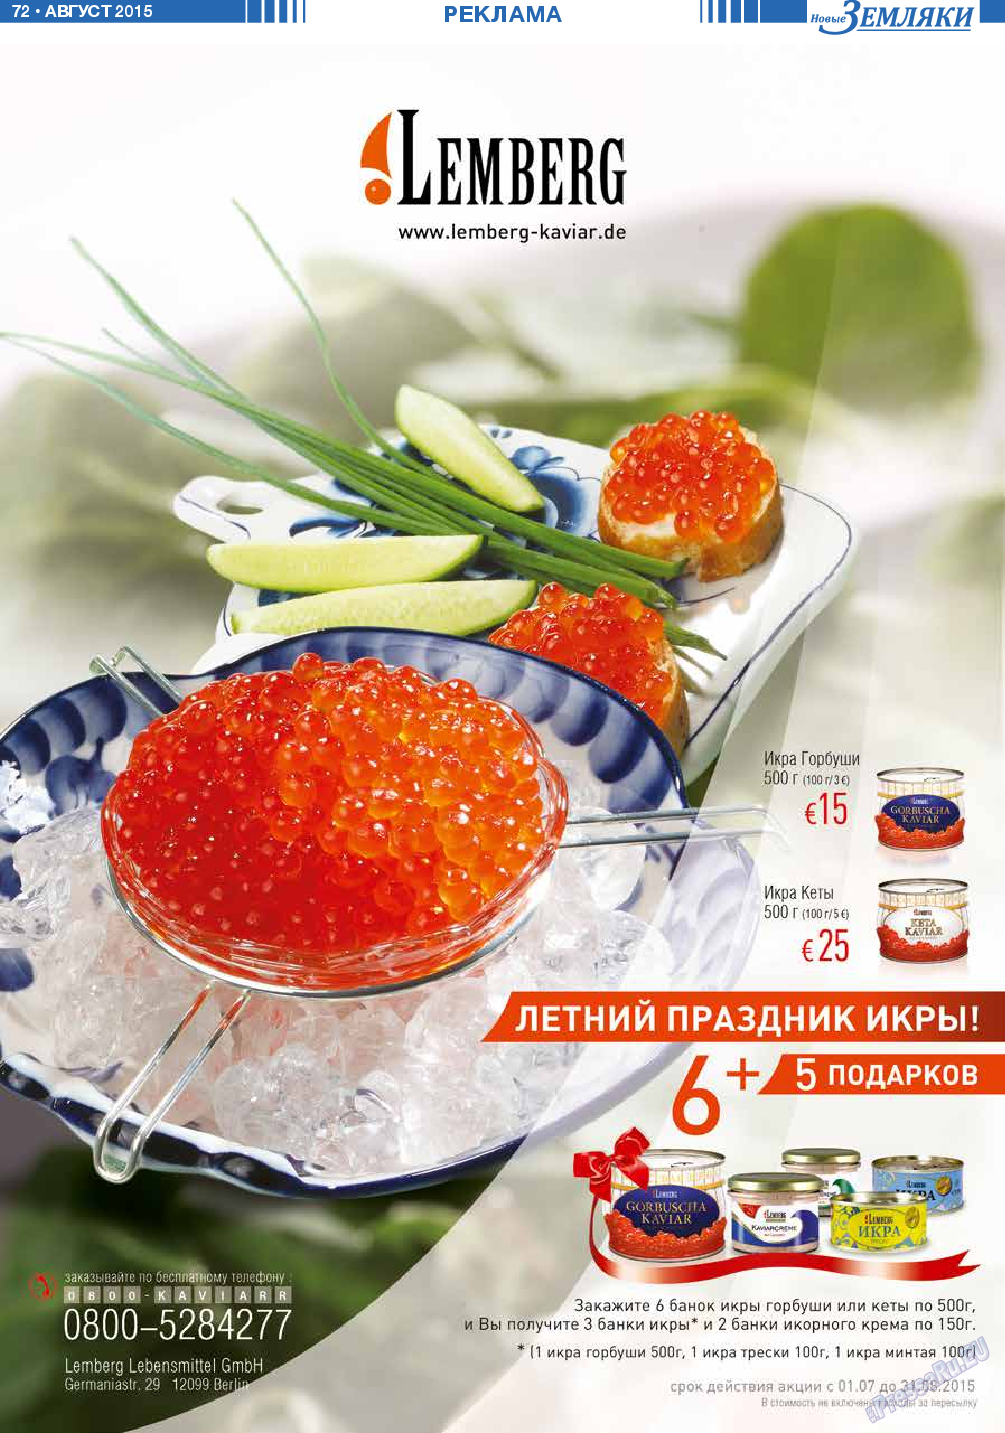 Новые Земляки (газета). 2015 год, номер 8, стр. 72